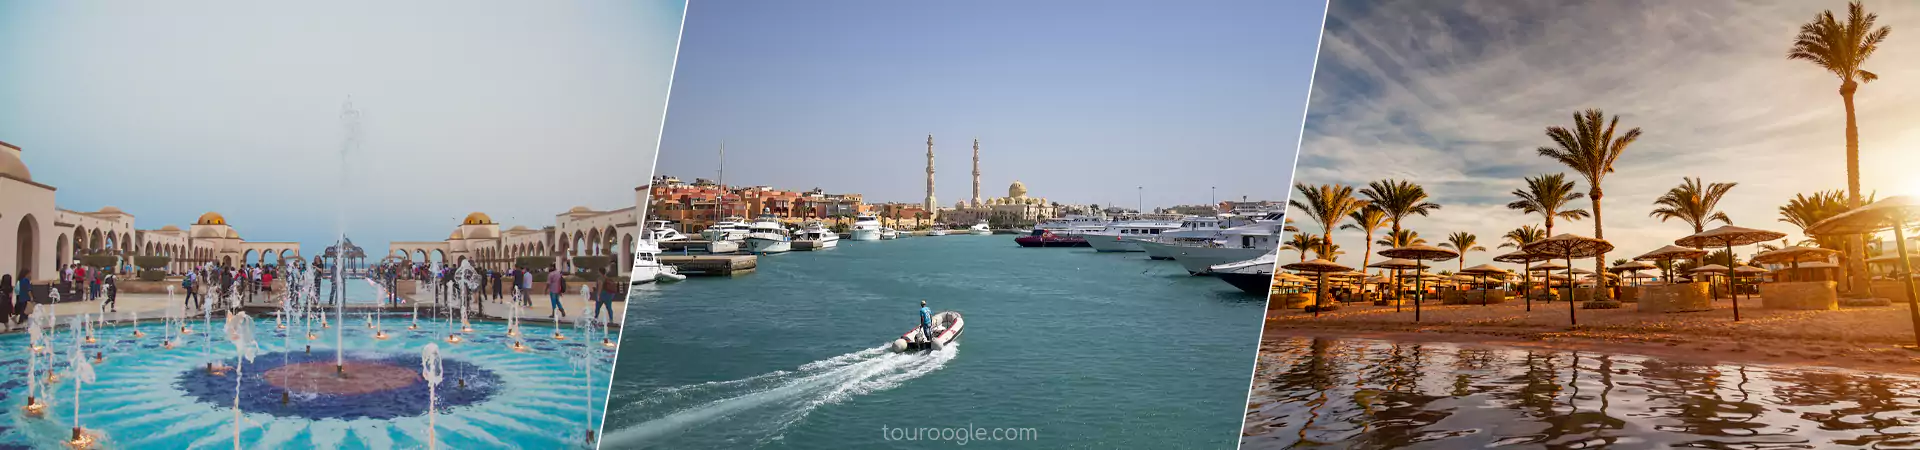 Hurghada tour